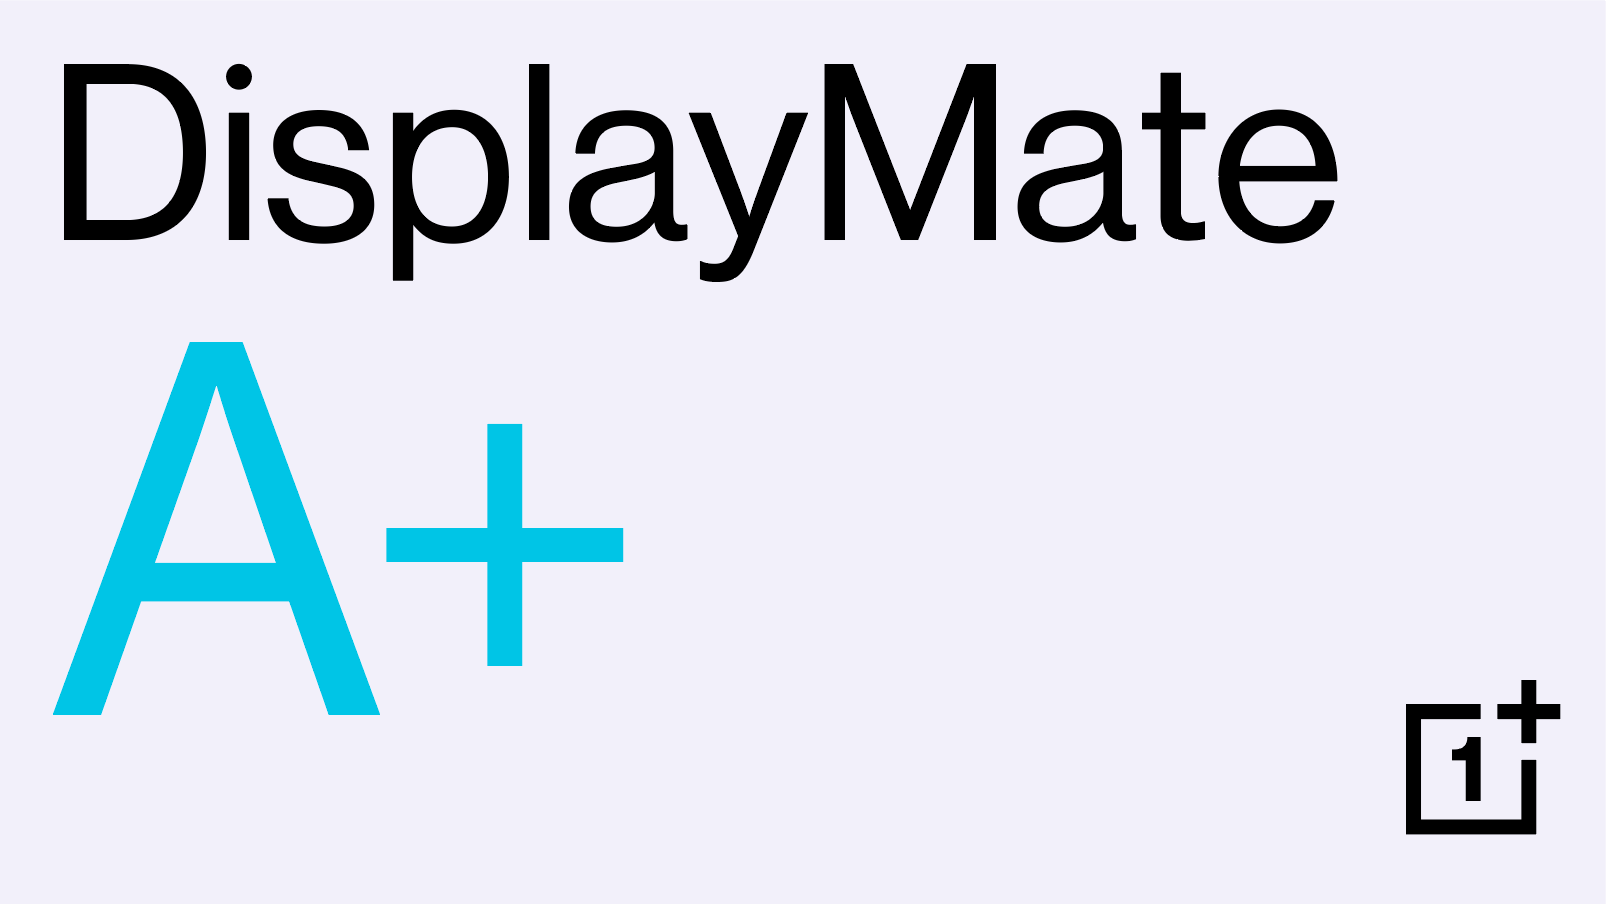 La familia OnePlus 8 obtiene la calificación A+ en rendimiento de pantalla, el nivel más alto de DisplayMate